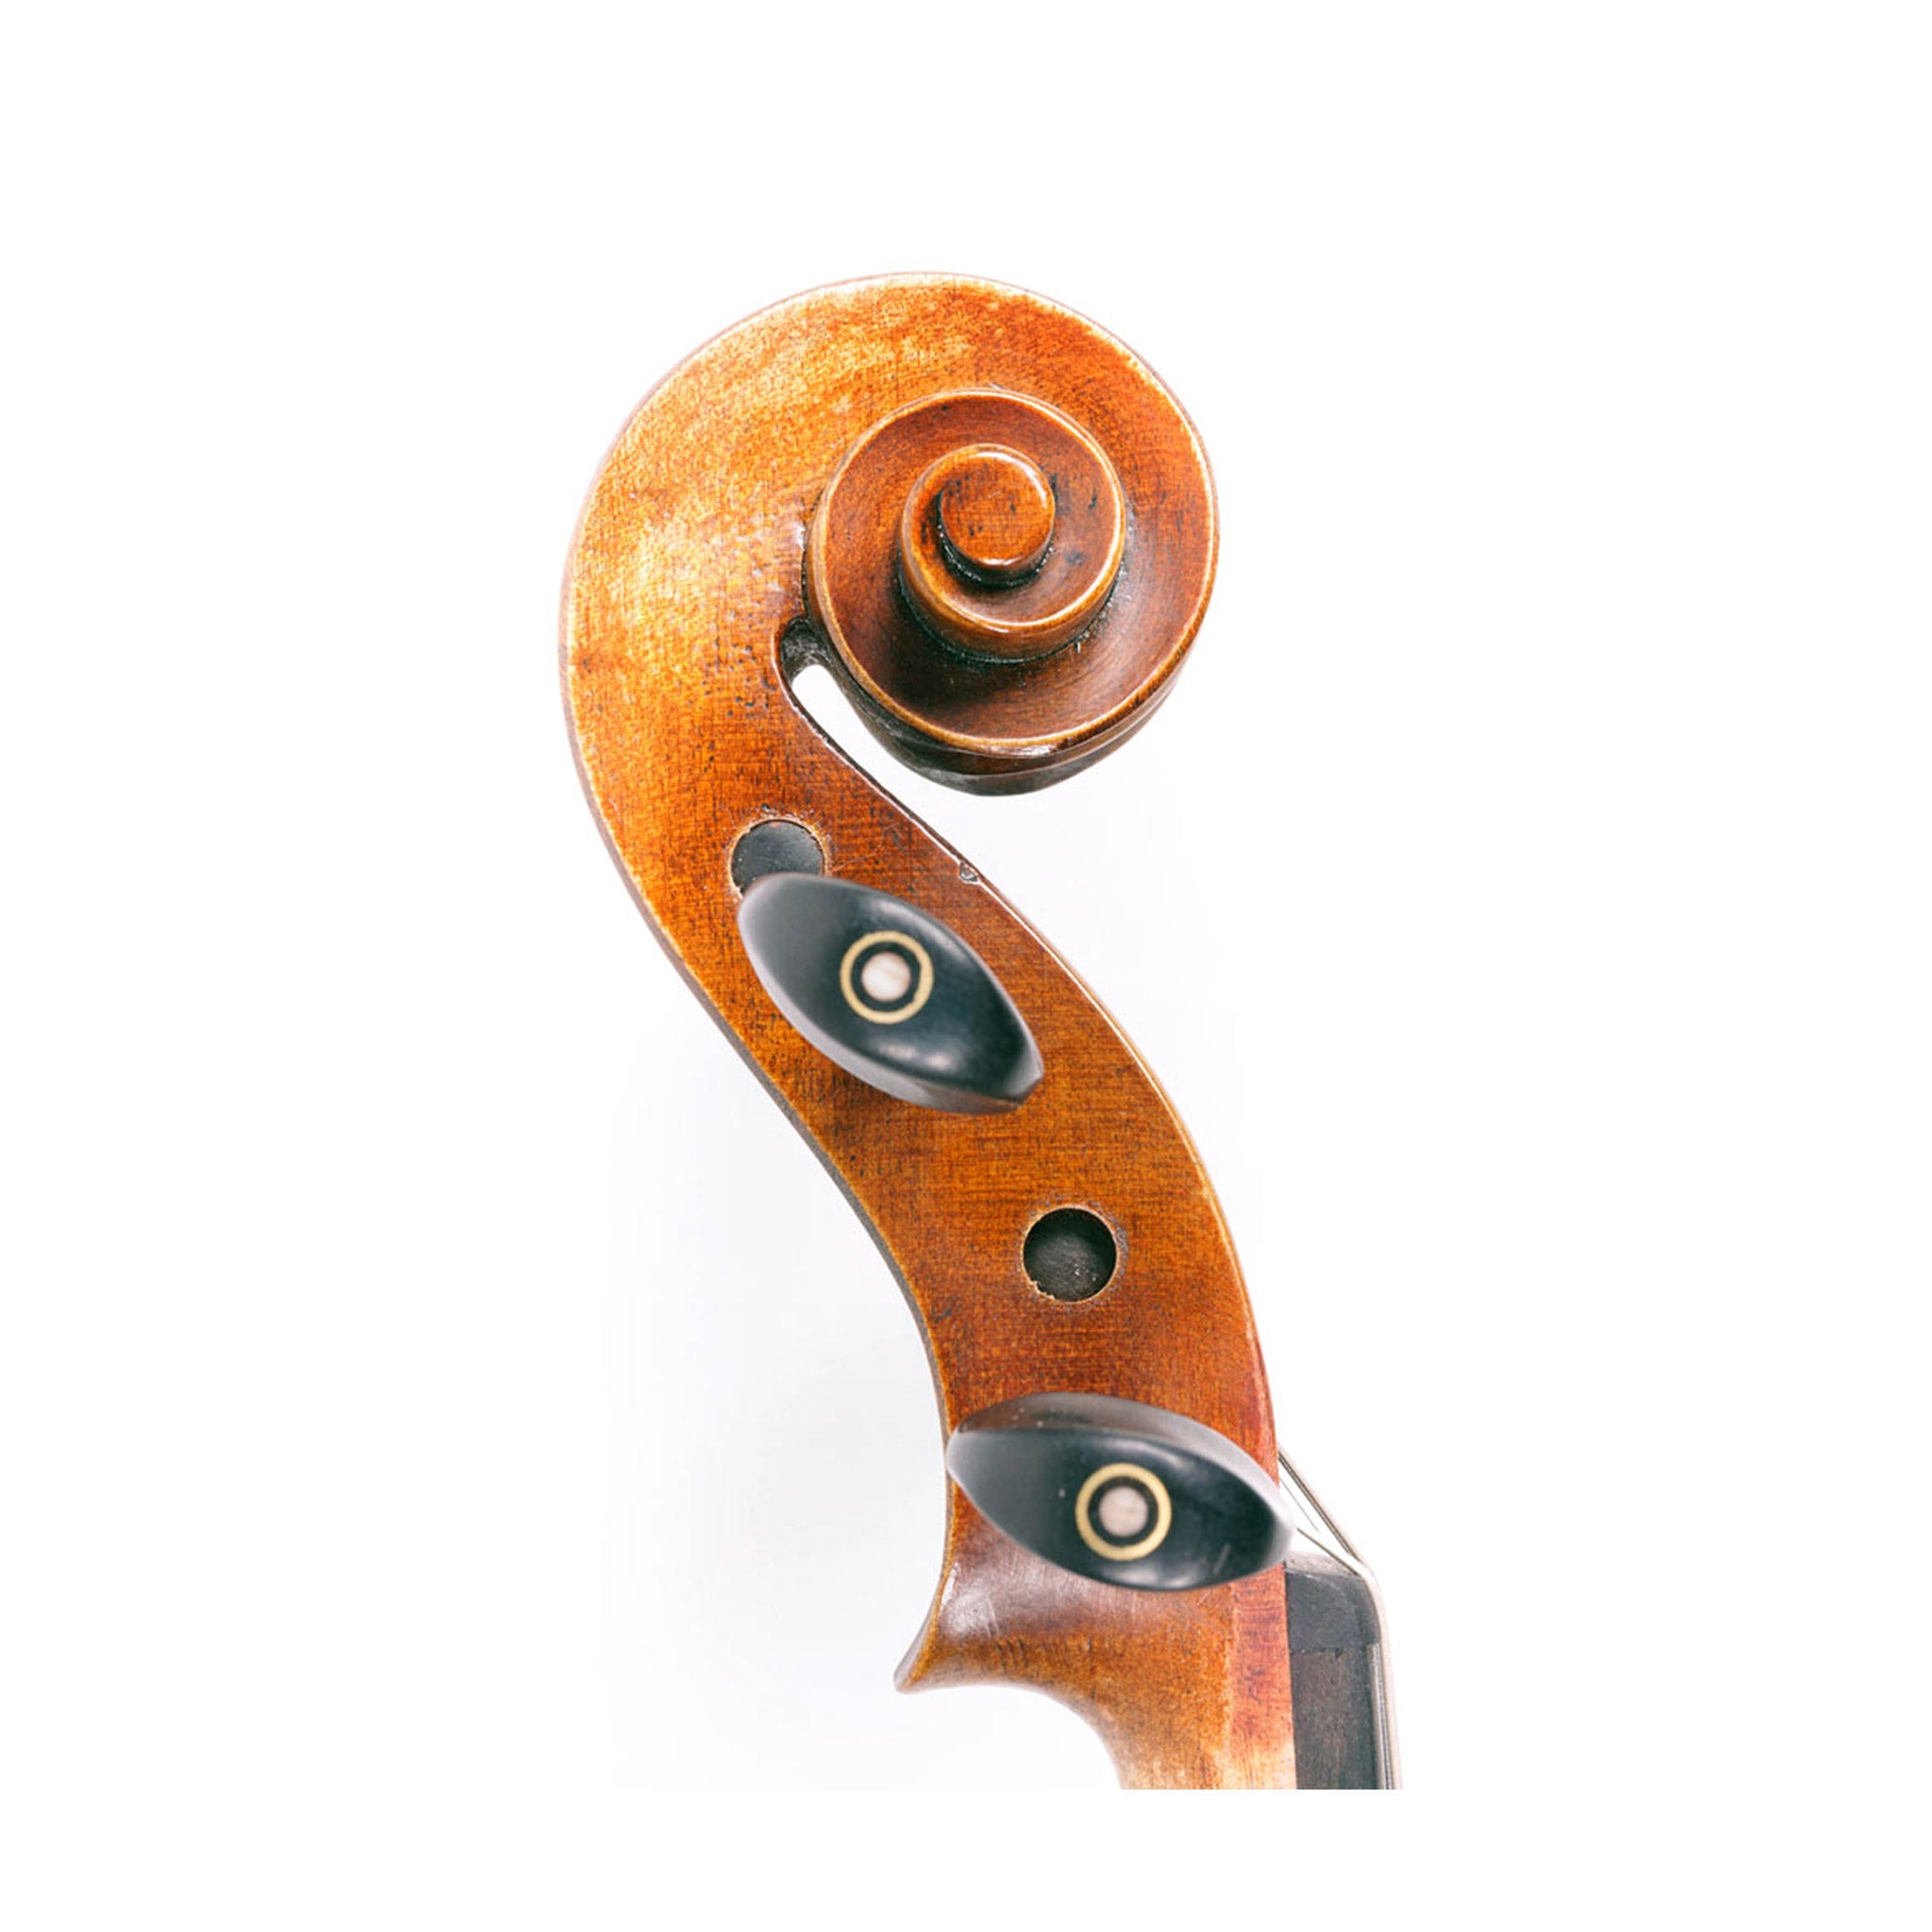 Fiddlerman Artist Violin Outfit (2019 Model)